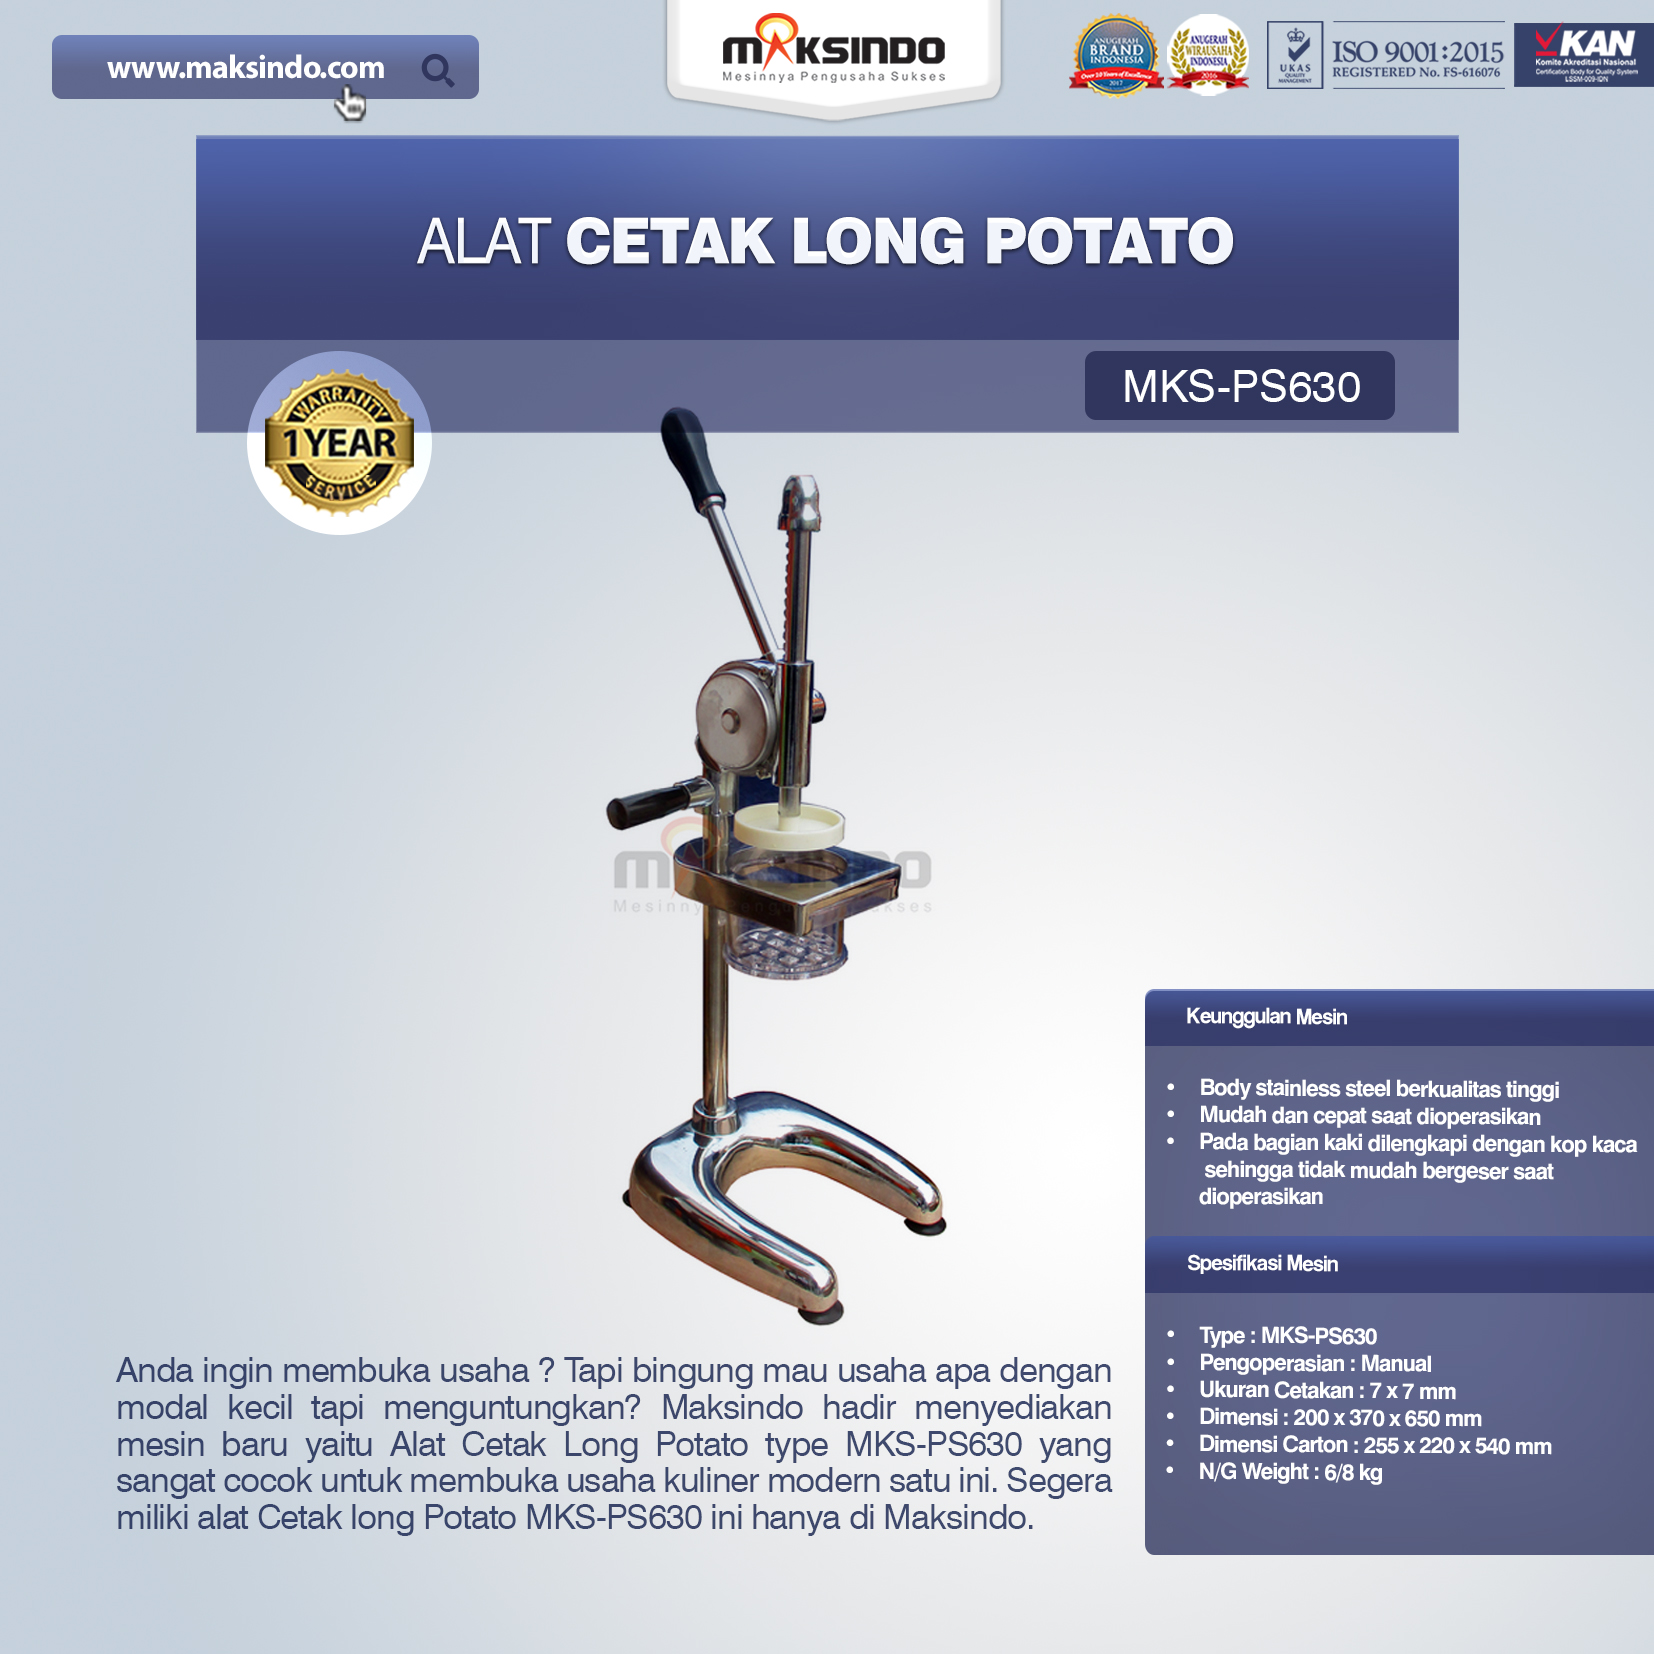 Jual Alat Cetak Long Potato MKS-PS630 di Malang